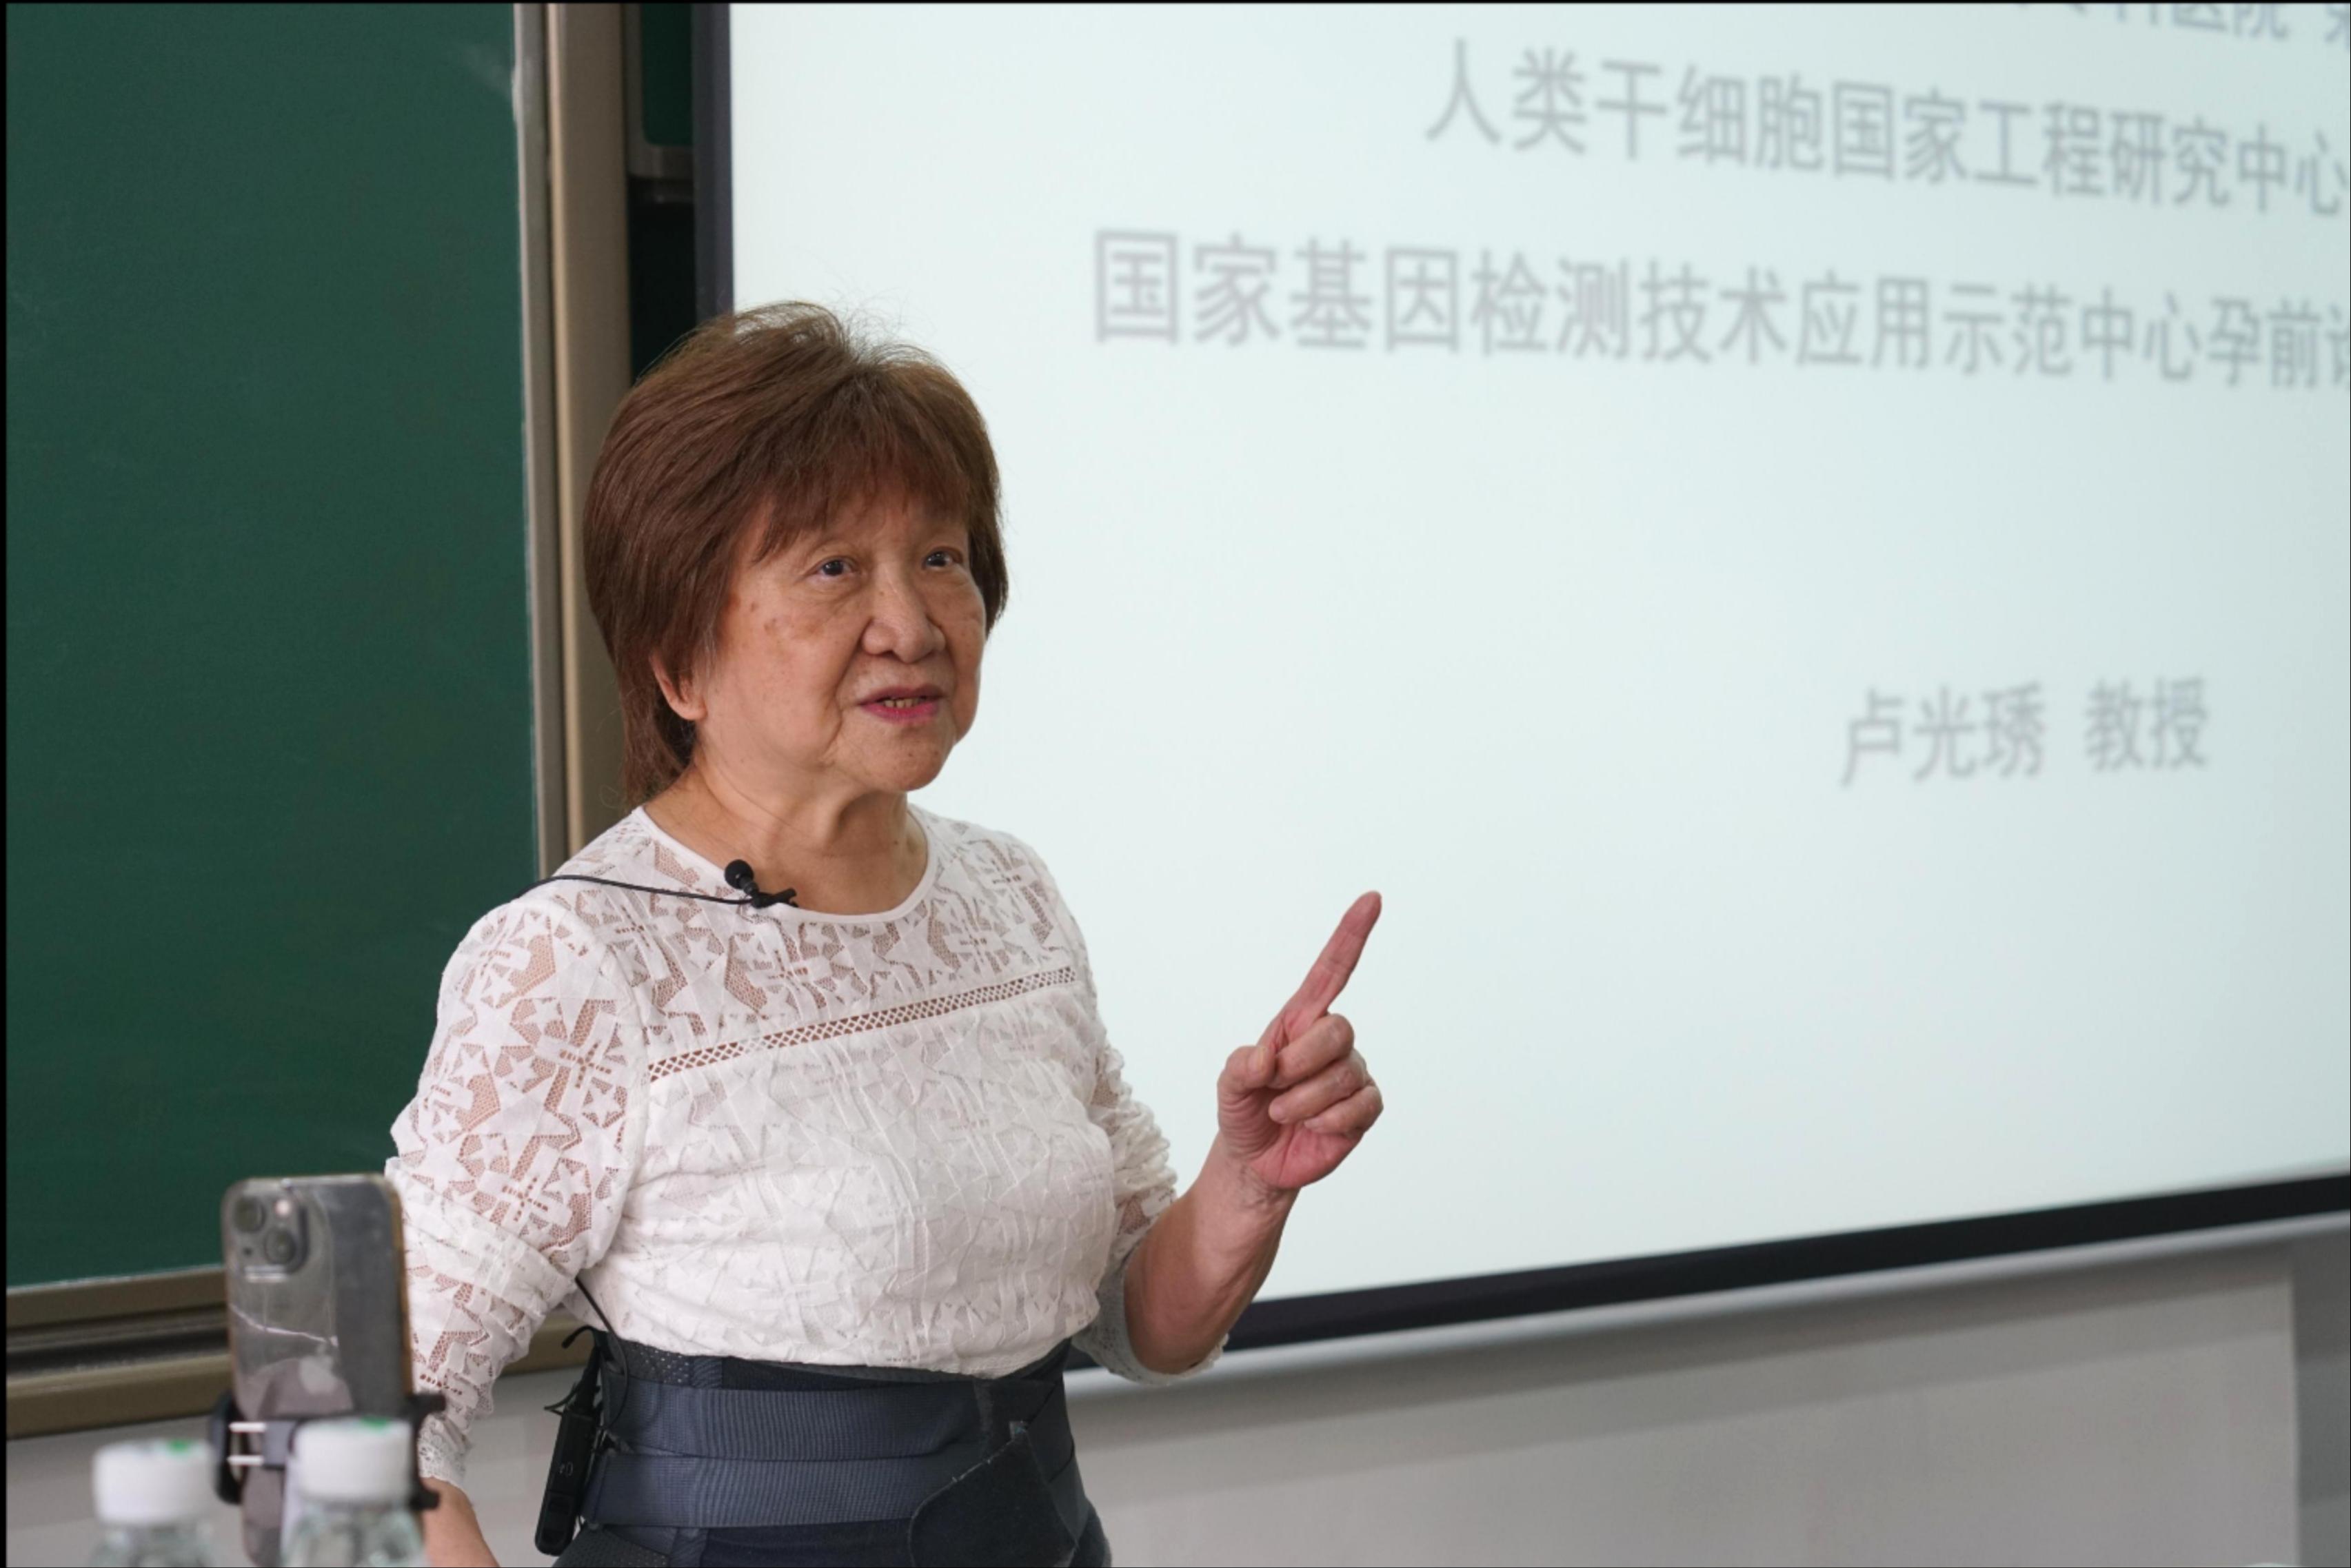 83岁的卢光琇教授讲授“干细胞第一课”